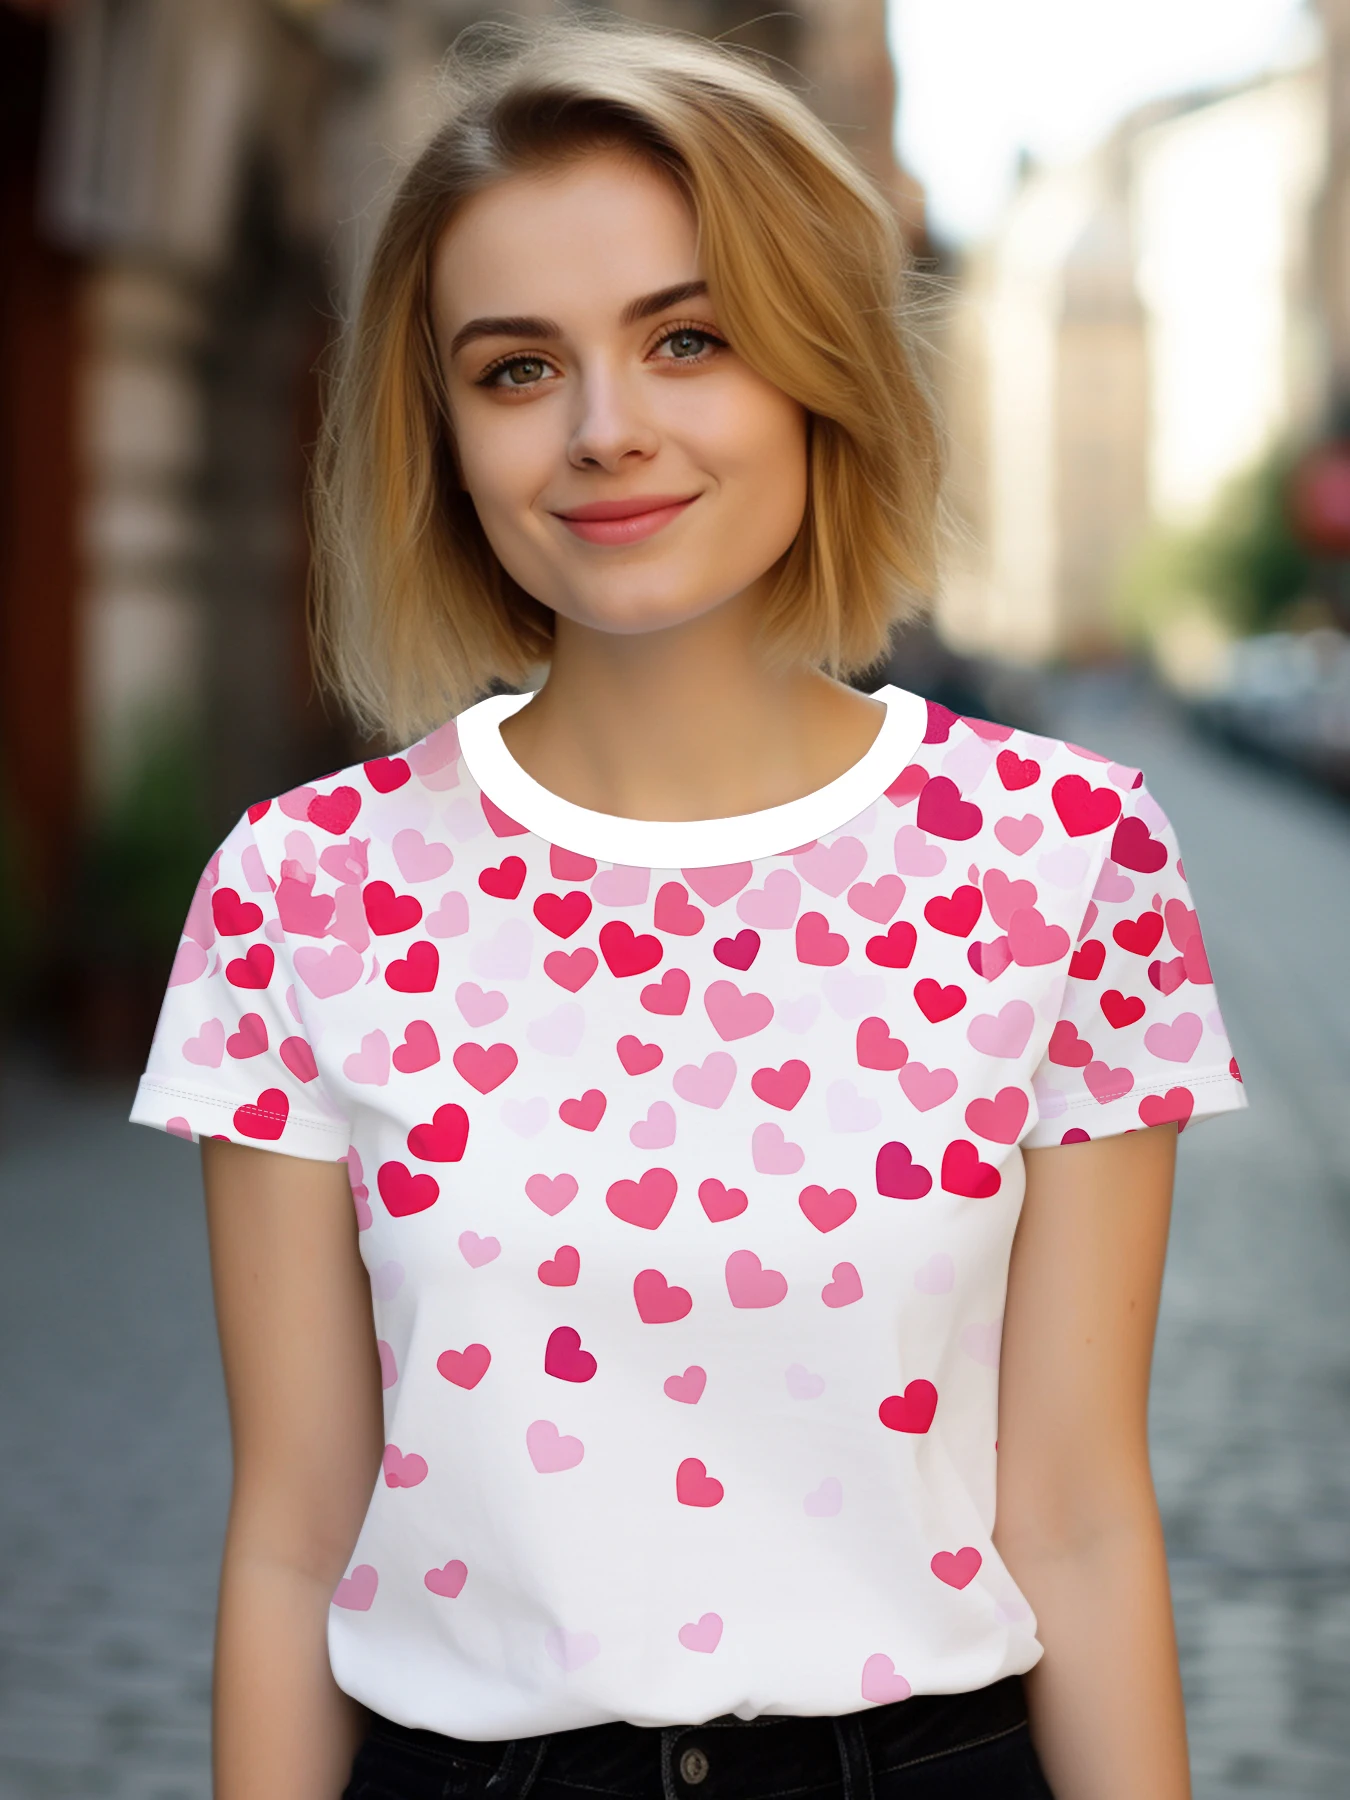 

Принт в форме сердца футболка, повседневный топ с коротким рукавом и круглым вырезом для весны и лета, женская одежда